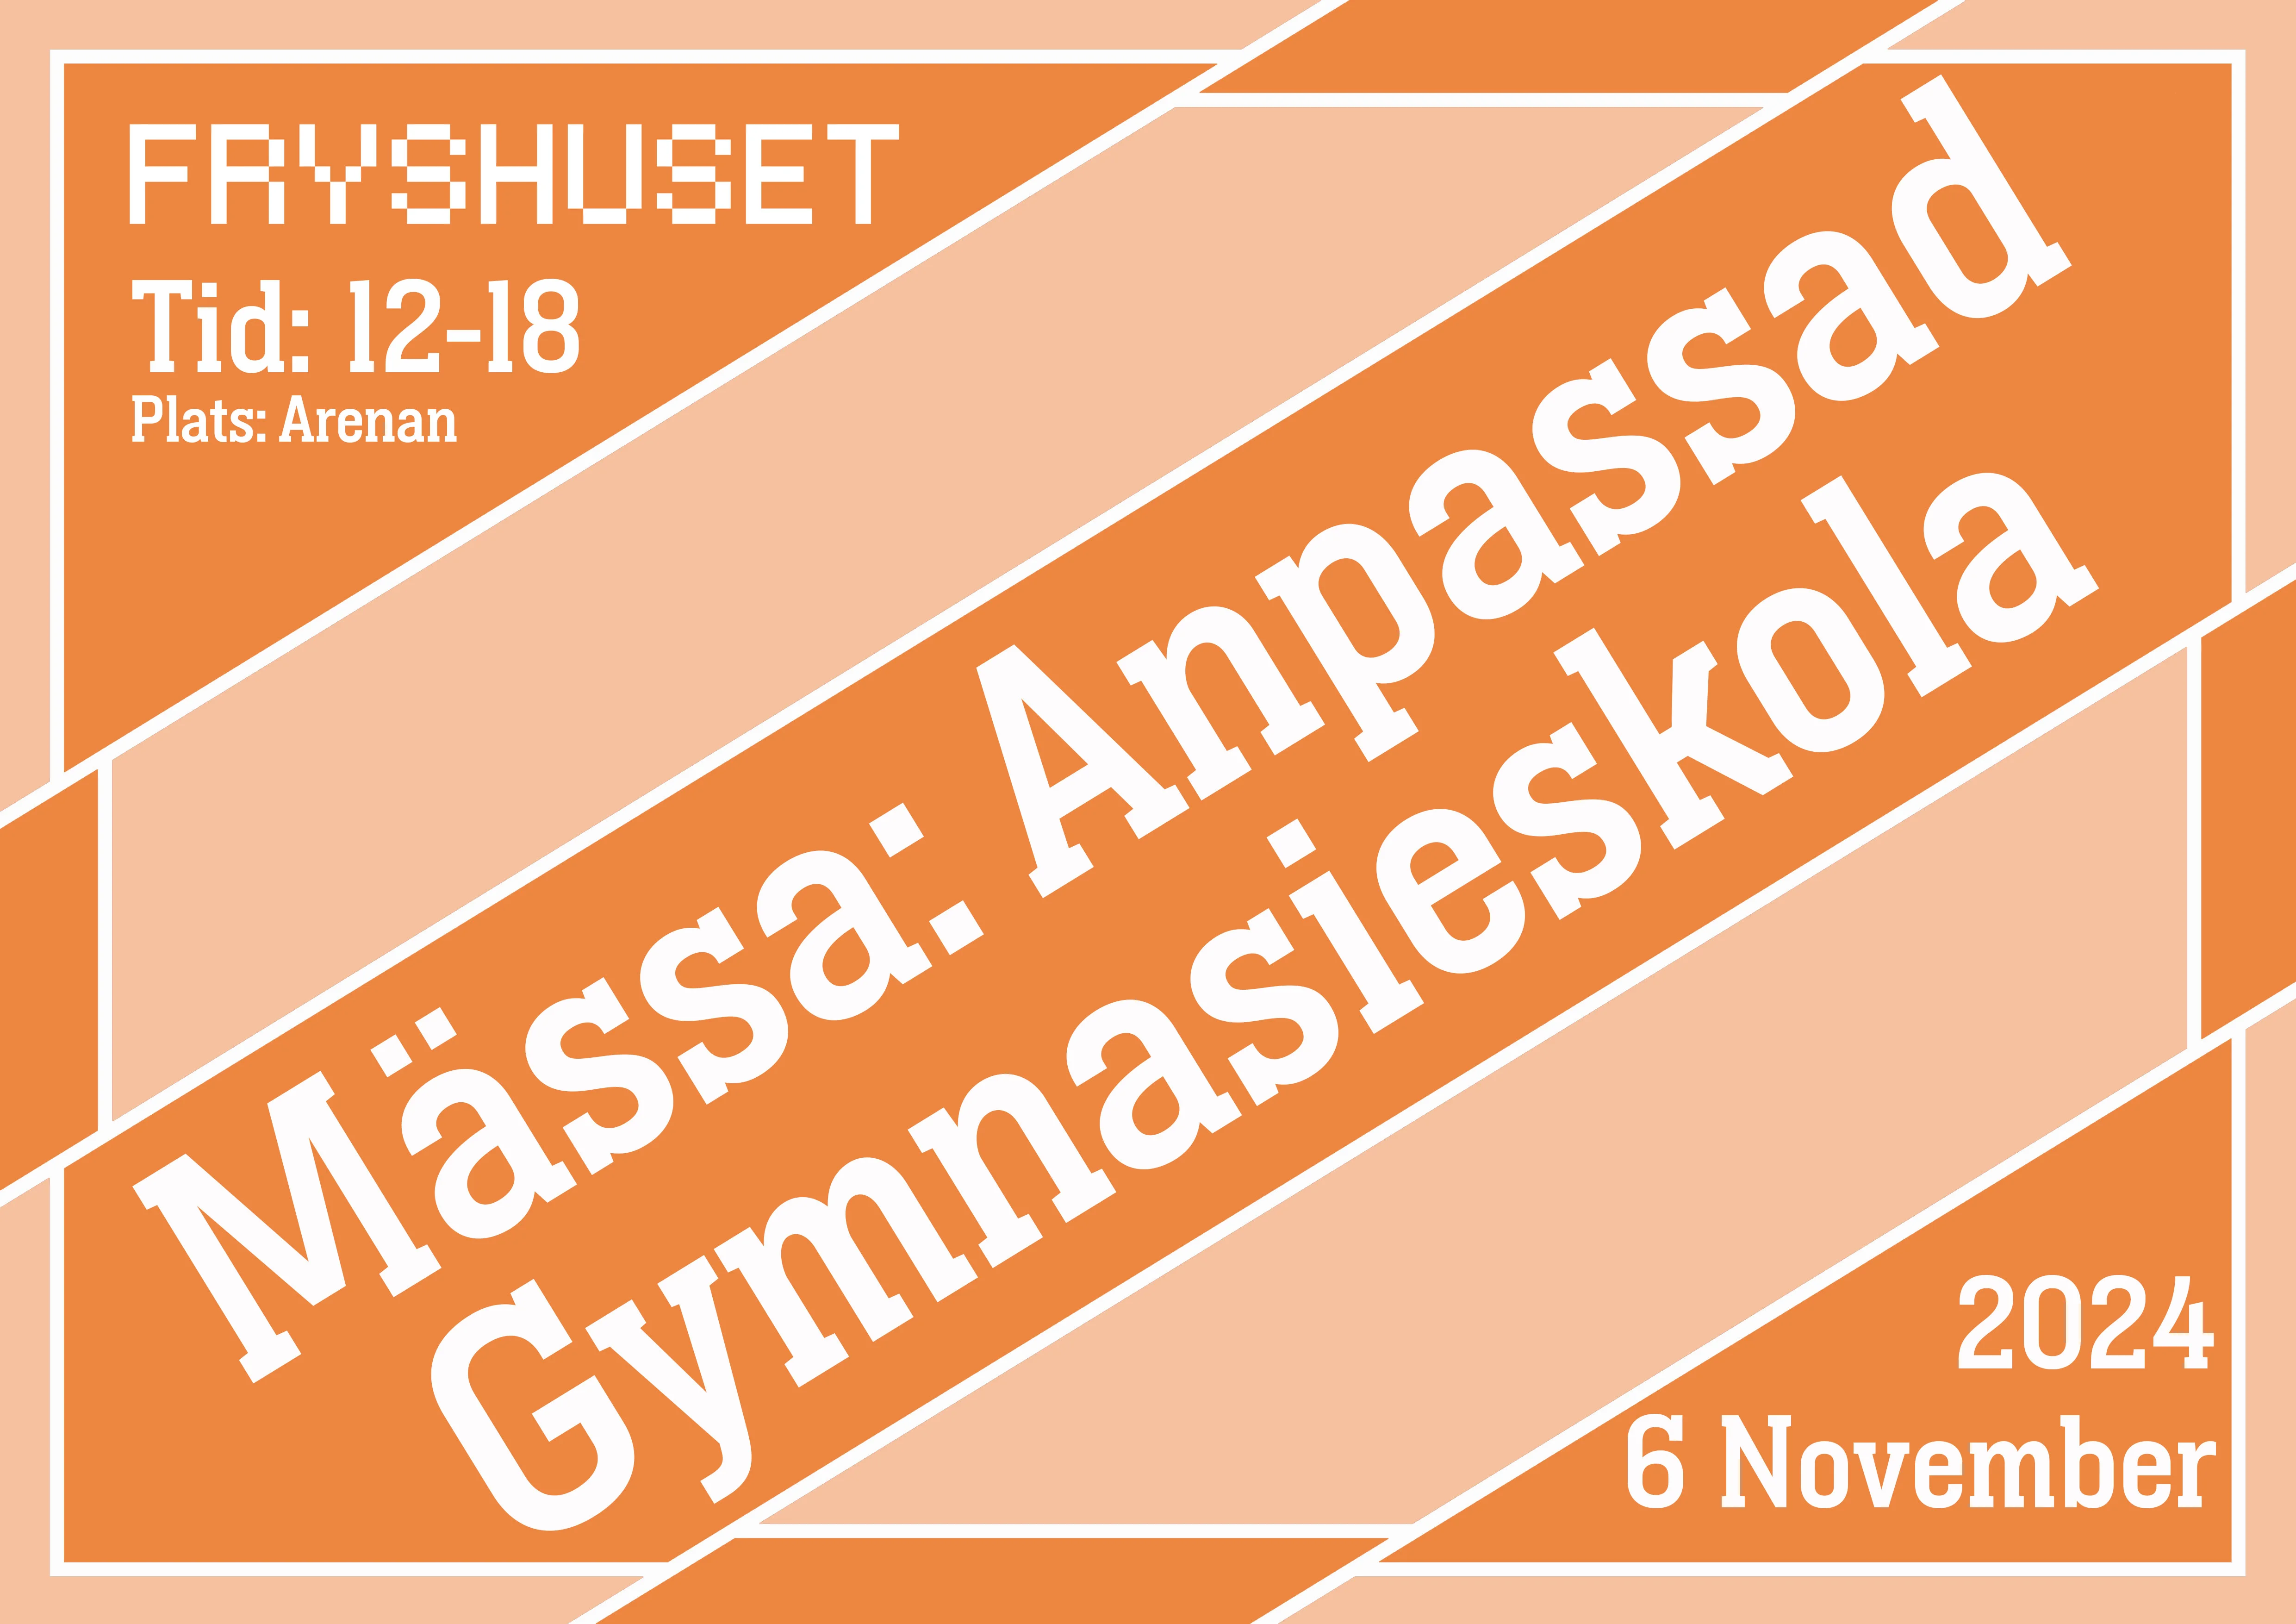 Affisch med block i persikofärger med texten "Mässa: Anpassad Gymnasieskola" Fryshuset. Tis: 12-18. Plats: Arenan